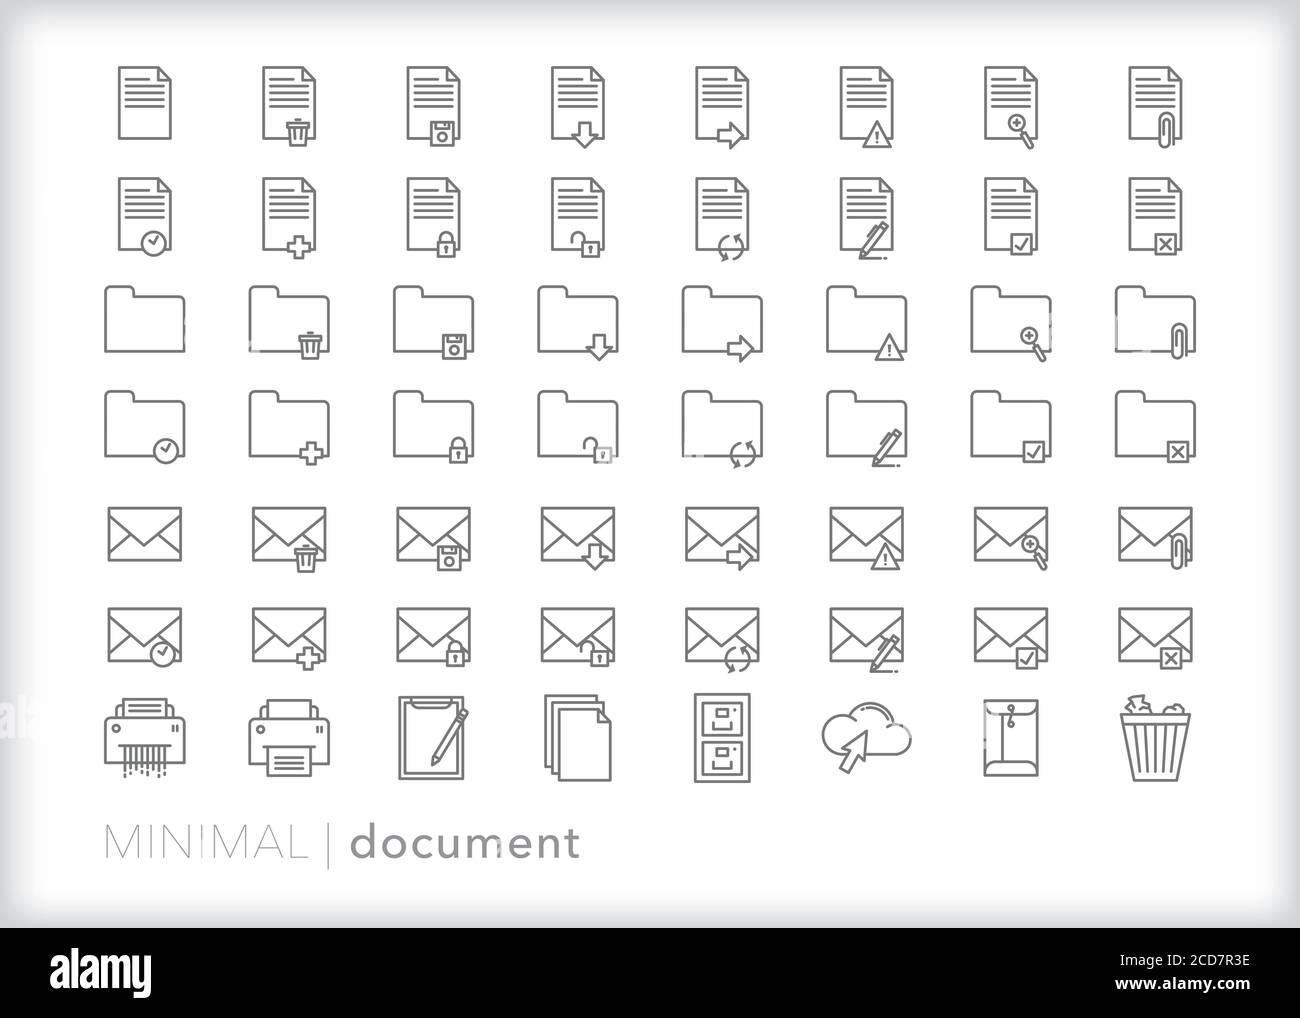 Ensemble de 56 icônes de ligne de document pour la création, l'envoi et la gestion de documents électroniques, de dossiers, d'e-mails et de fichiers Illustration de Vecteur